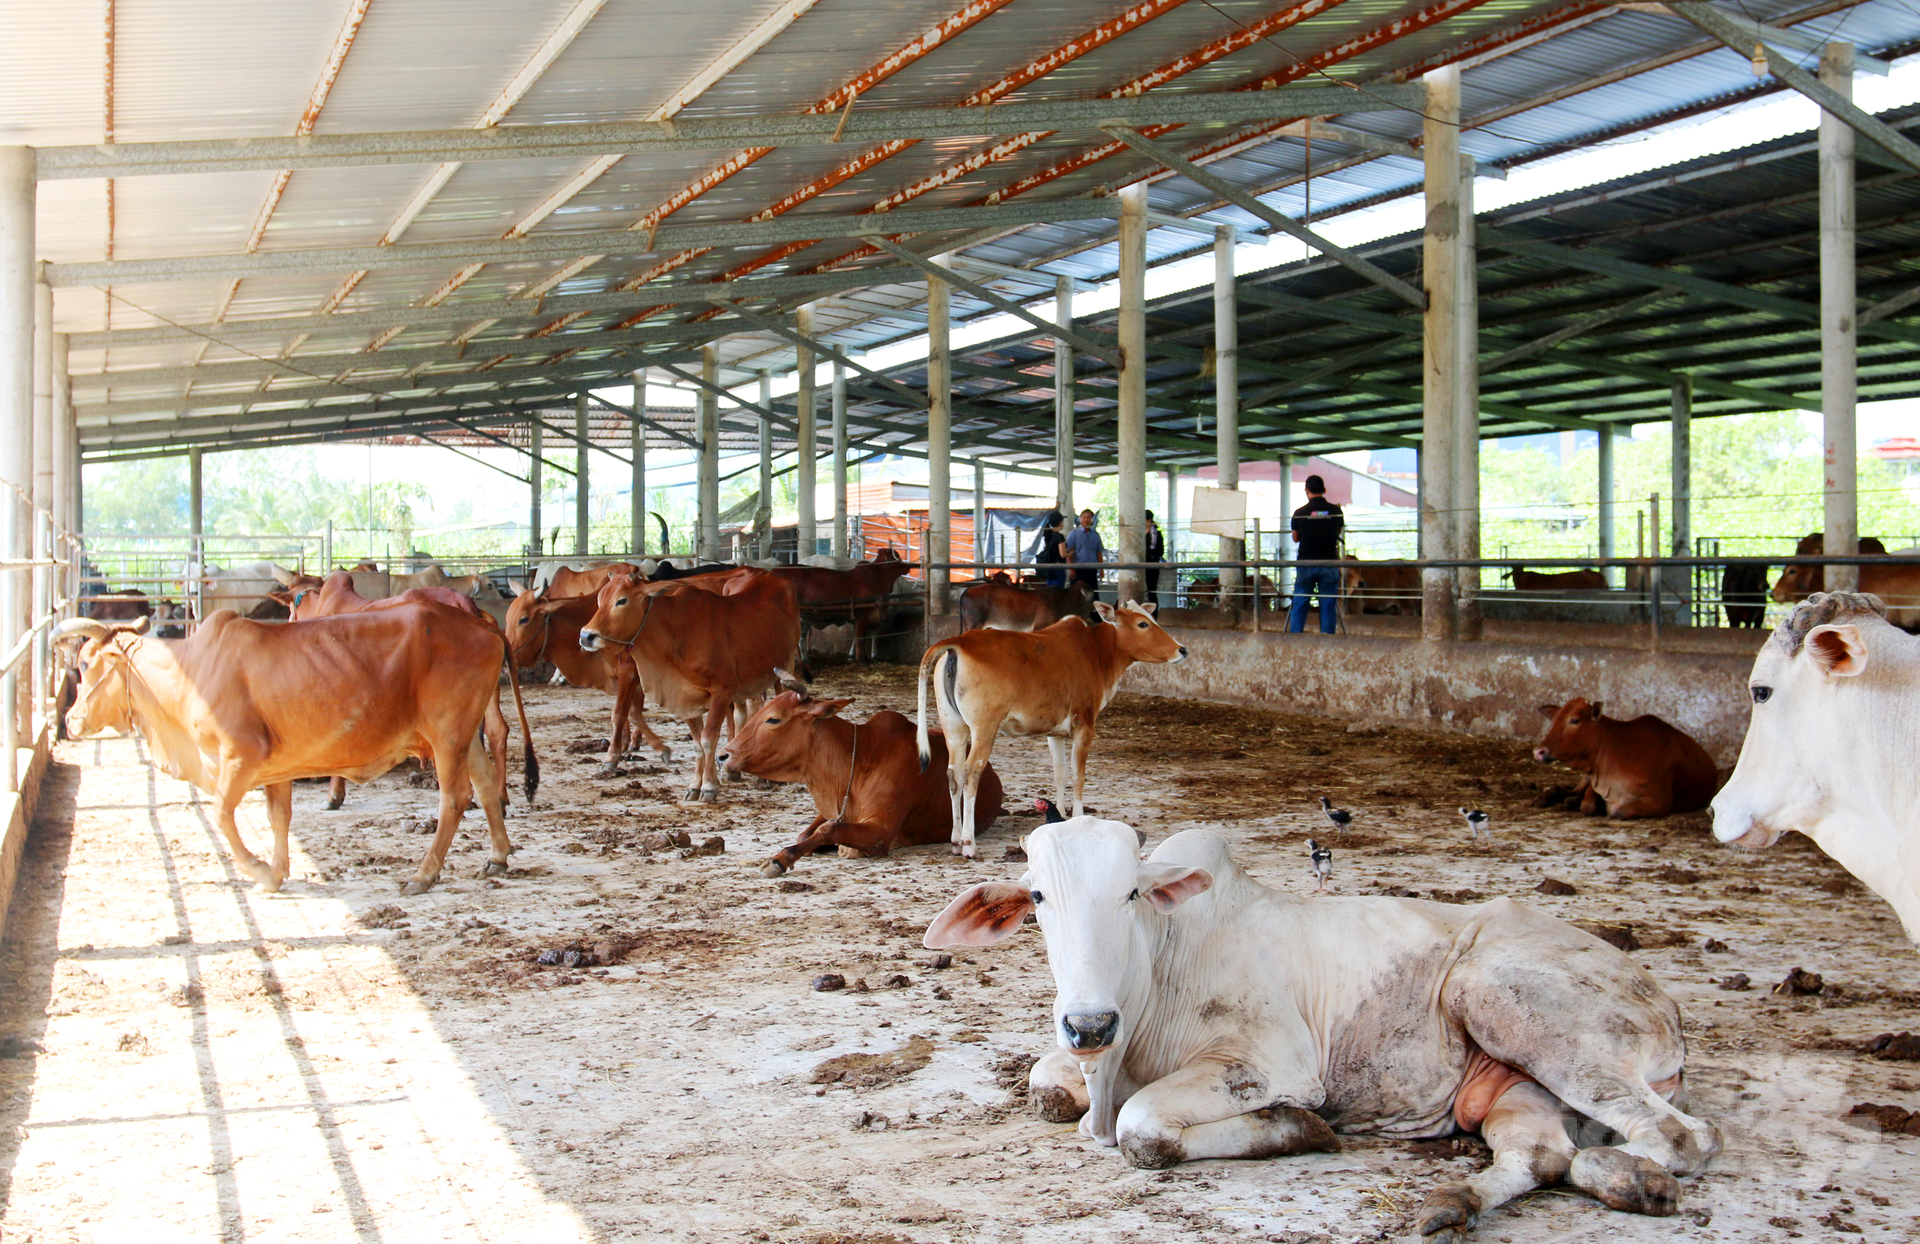 Trang trại bò thịt của ông Phan Văn Kẻn mỗi năm lãi gần 1 tỷ đồng. Ảnh: Lê Hoàng Vũ.